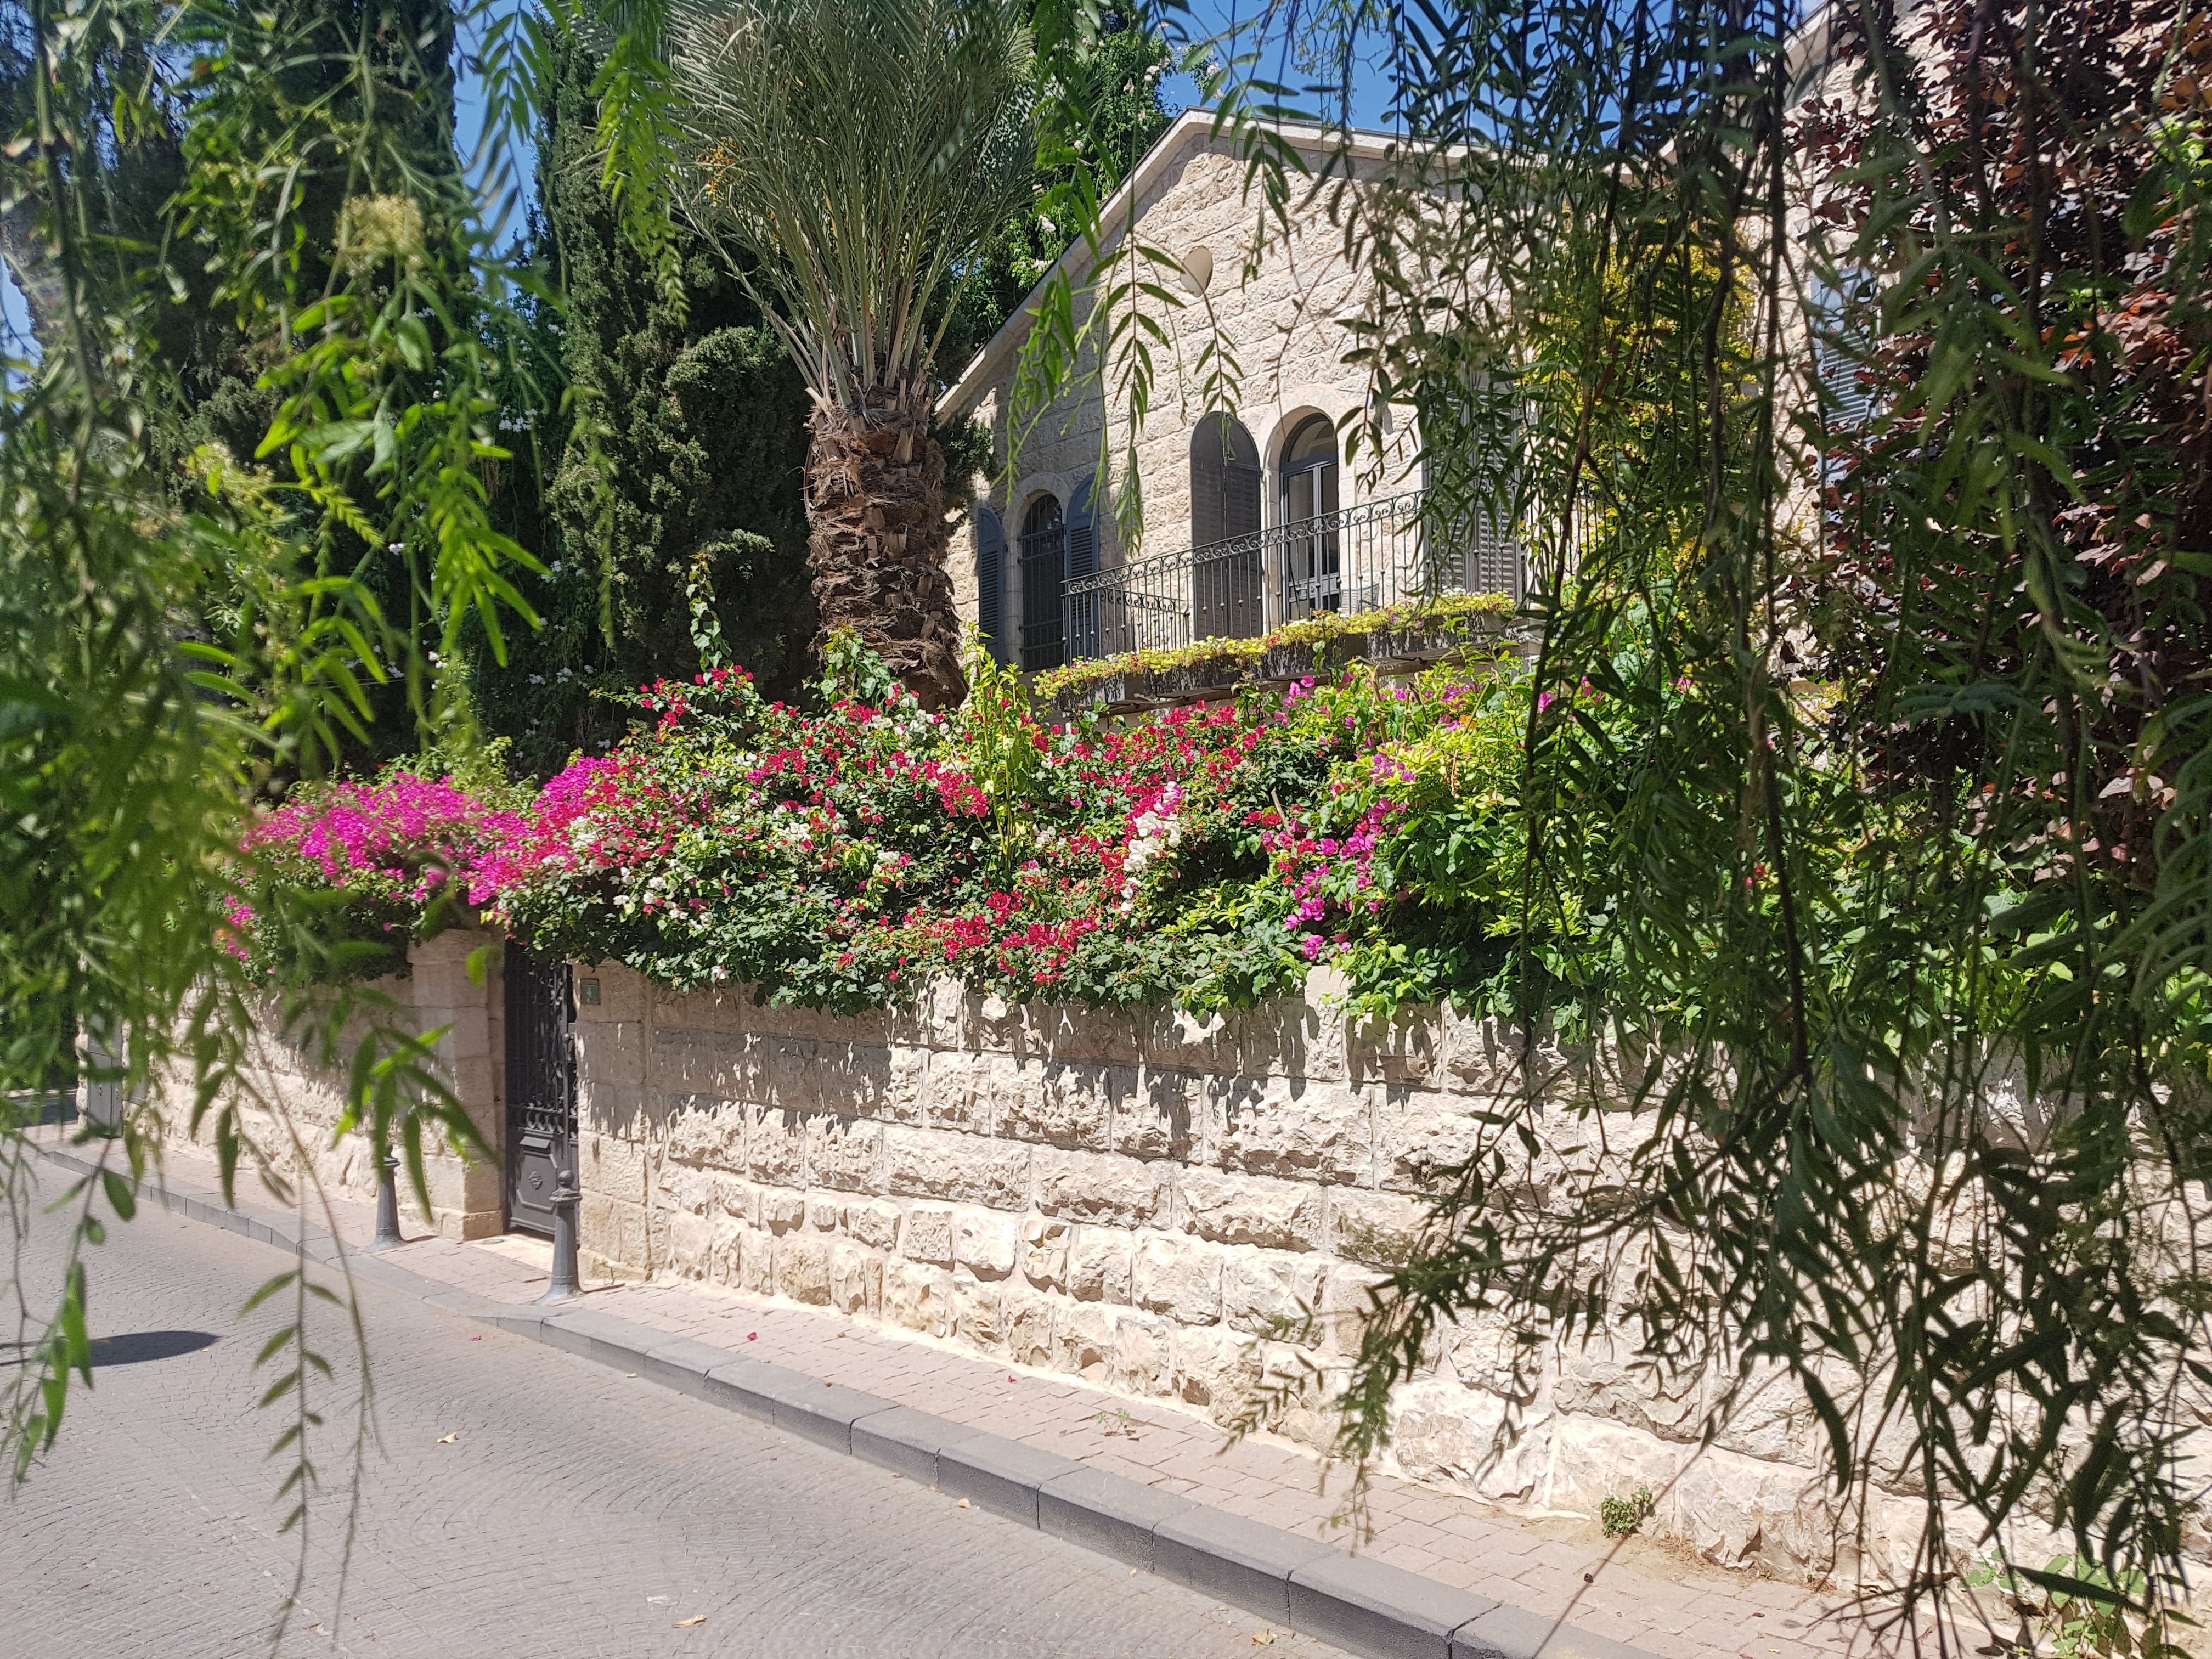 מושבה כפרית בלב העיר: סיור בוקר ציורי וקליל בירושלים